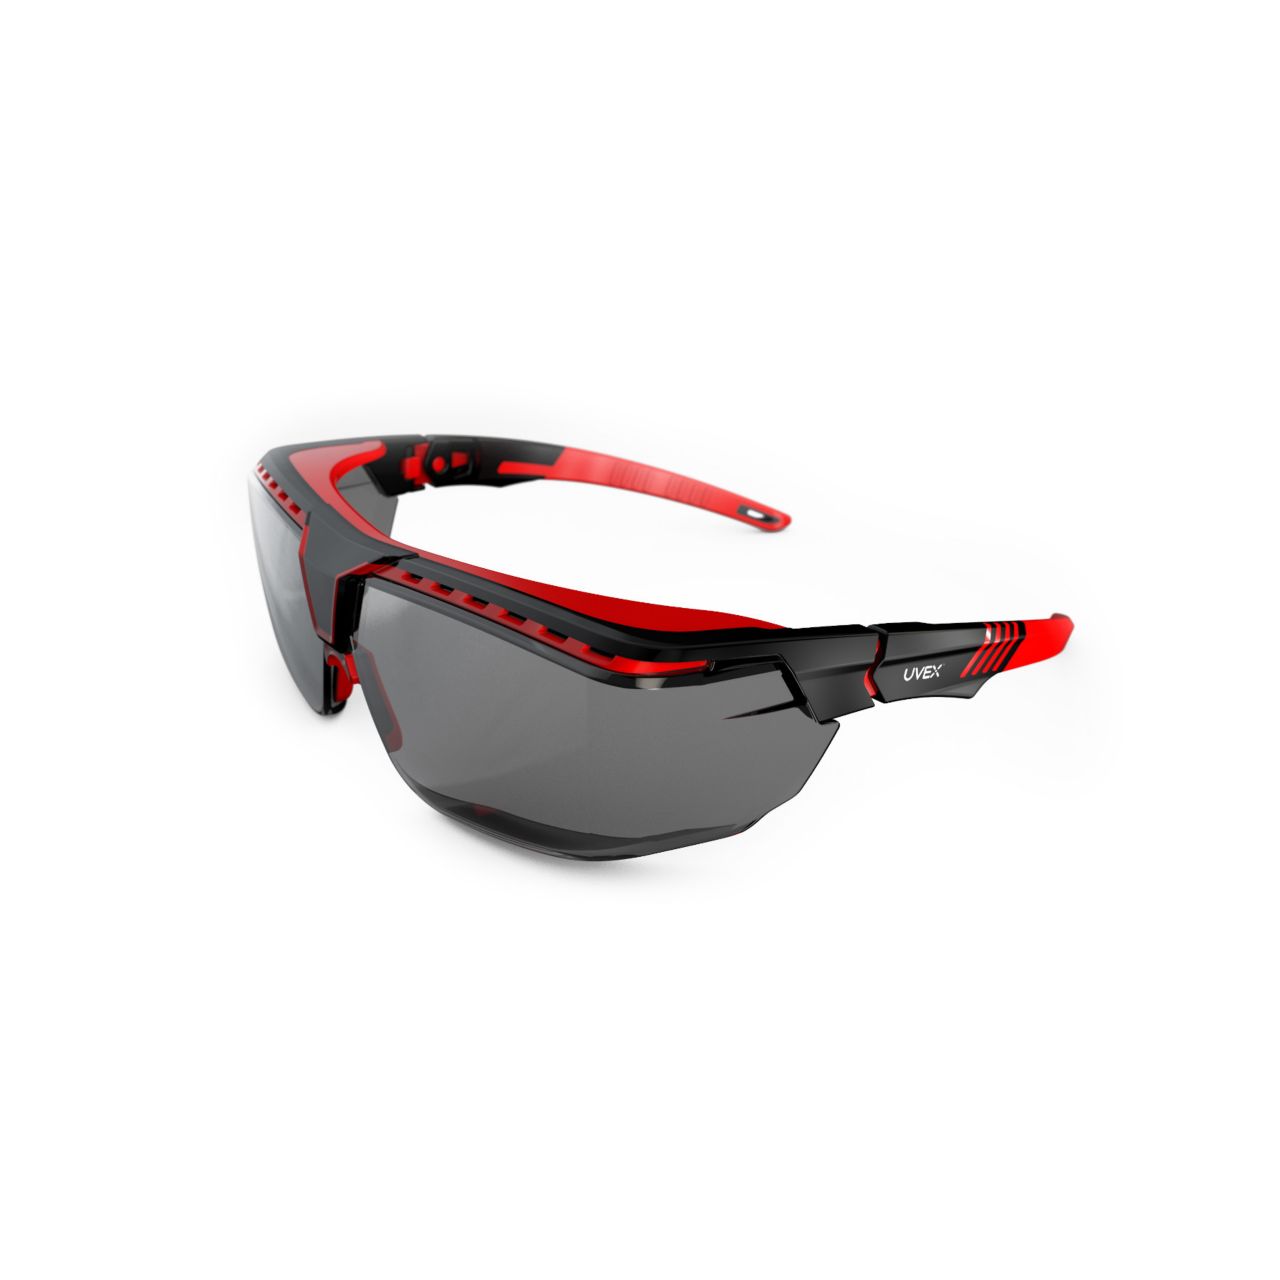 UX_uvex-avatar-otg-safety-glasses_s3852_uvex_avatar_otg_red_black_grey_wb